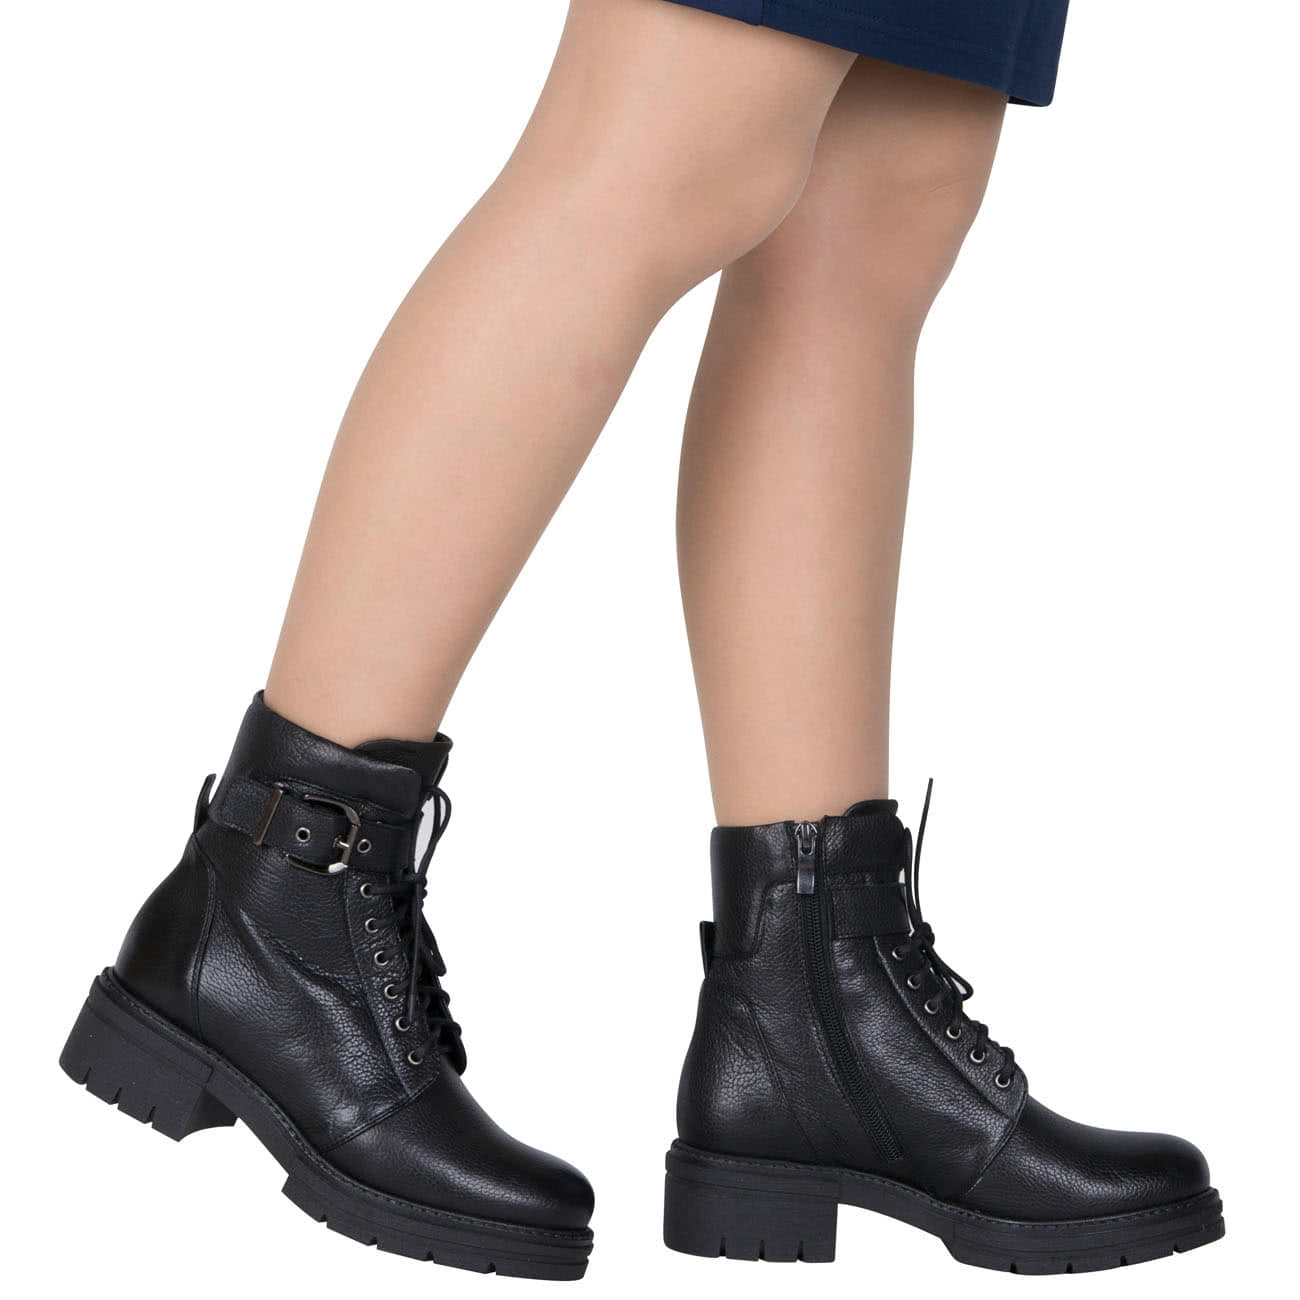 Зимние женские ботинки из натуральной кожи утепленные натуральным мехом  купить в интернет магазине Kwinto